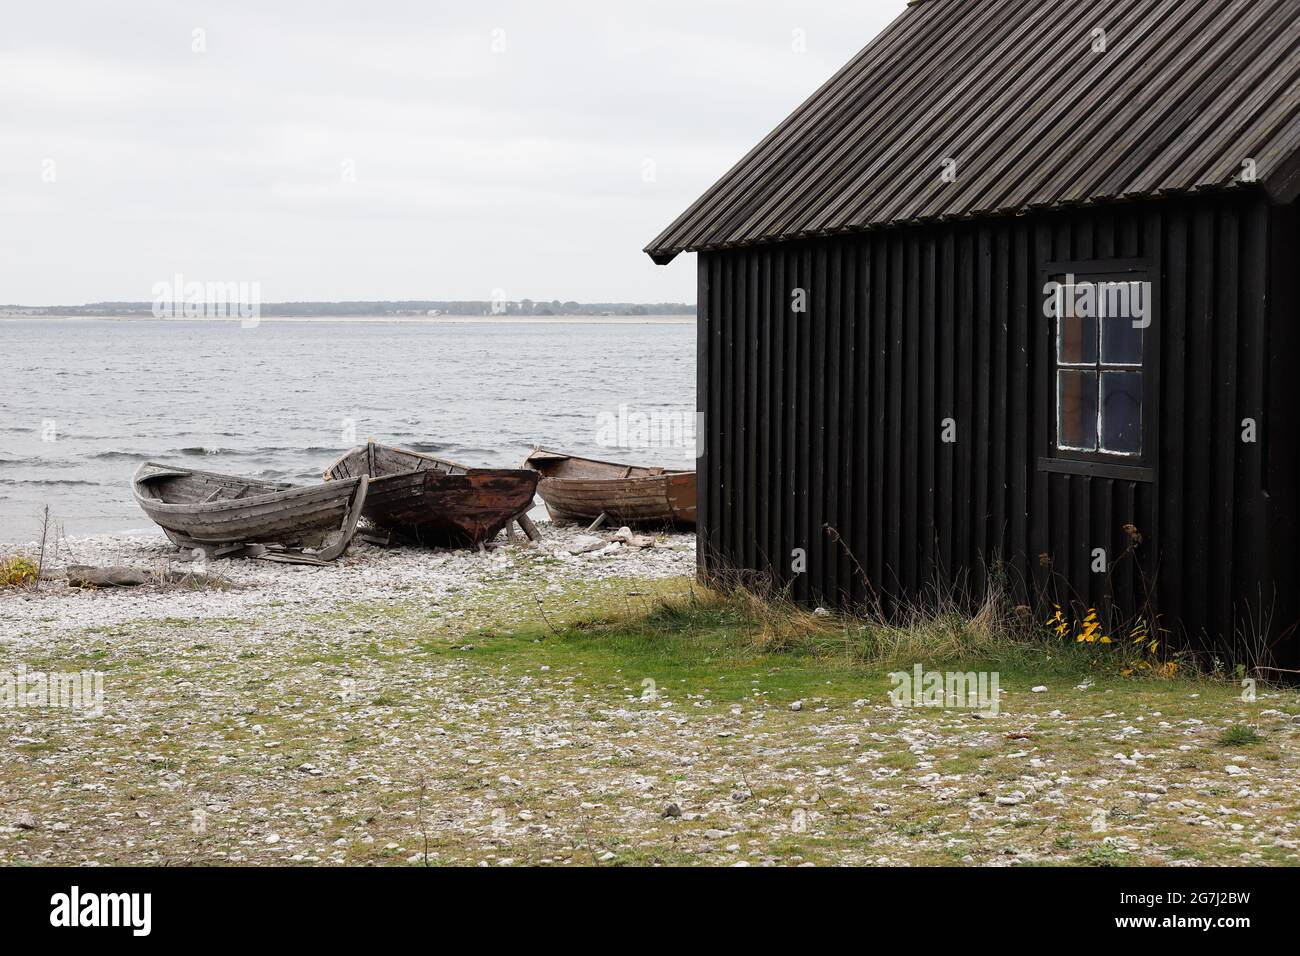 Ancien hangar et bateaux à la station de pêche historique de Helgumannen située sur l'île de Faro dans la province suédoise de Gotland. Banque D'Images